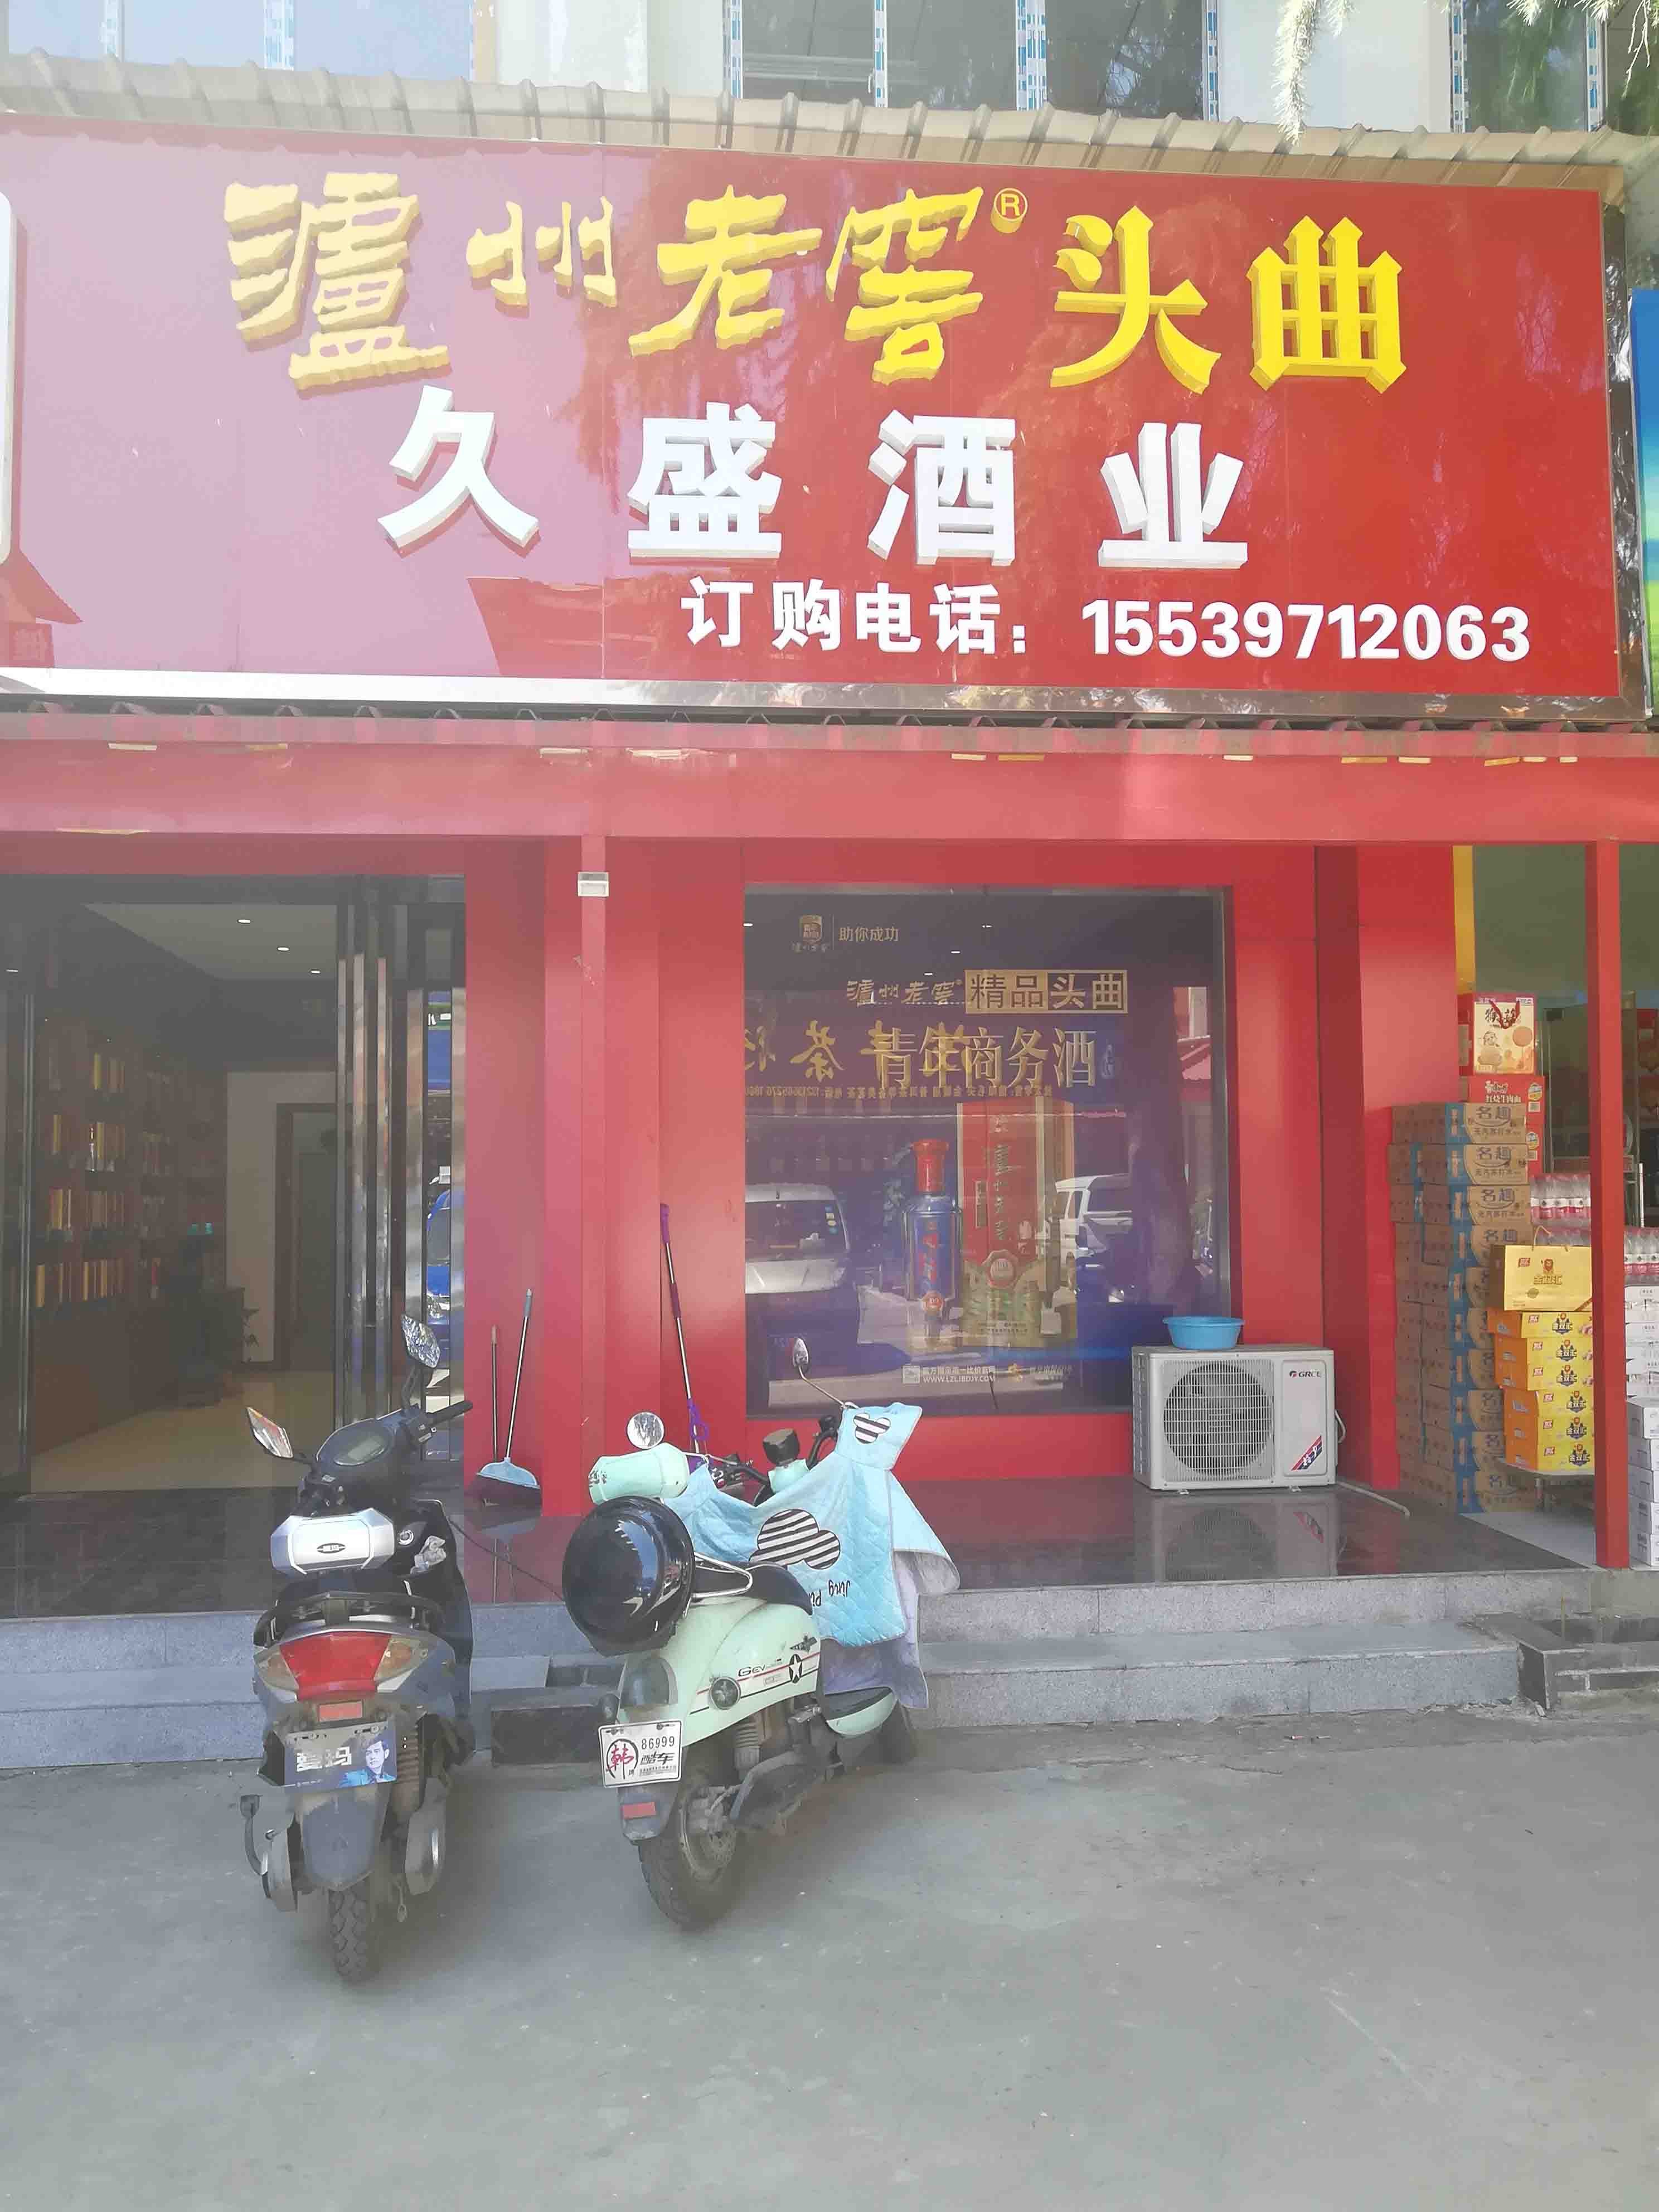 广州市场东街在洛阳出租高端写字楼，专注于寻求办公环境的企业和企业家设计。我们提供豪华写字楼，保证您的商务需求得到满足